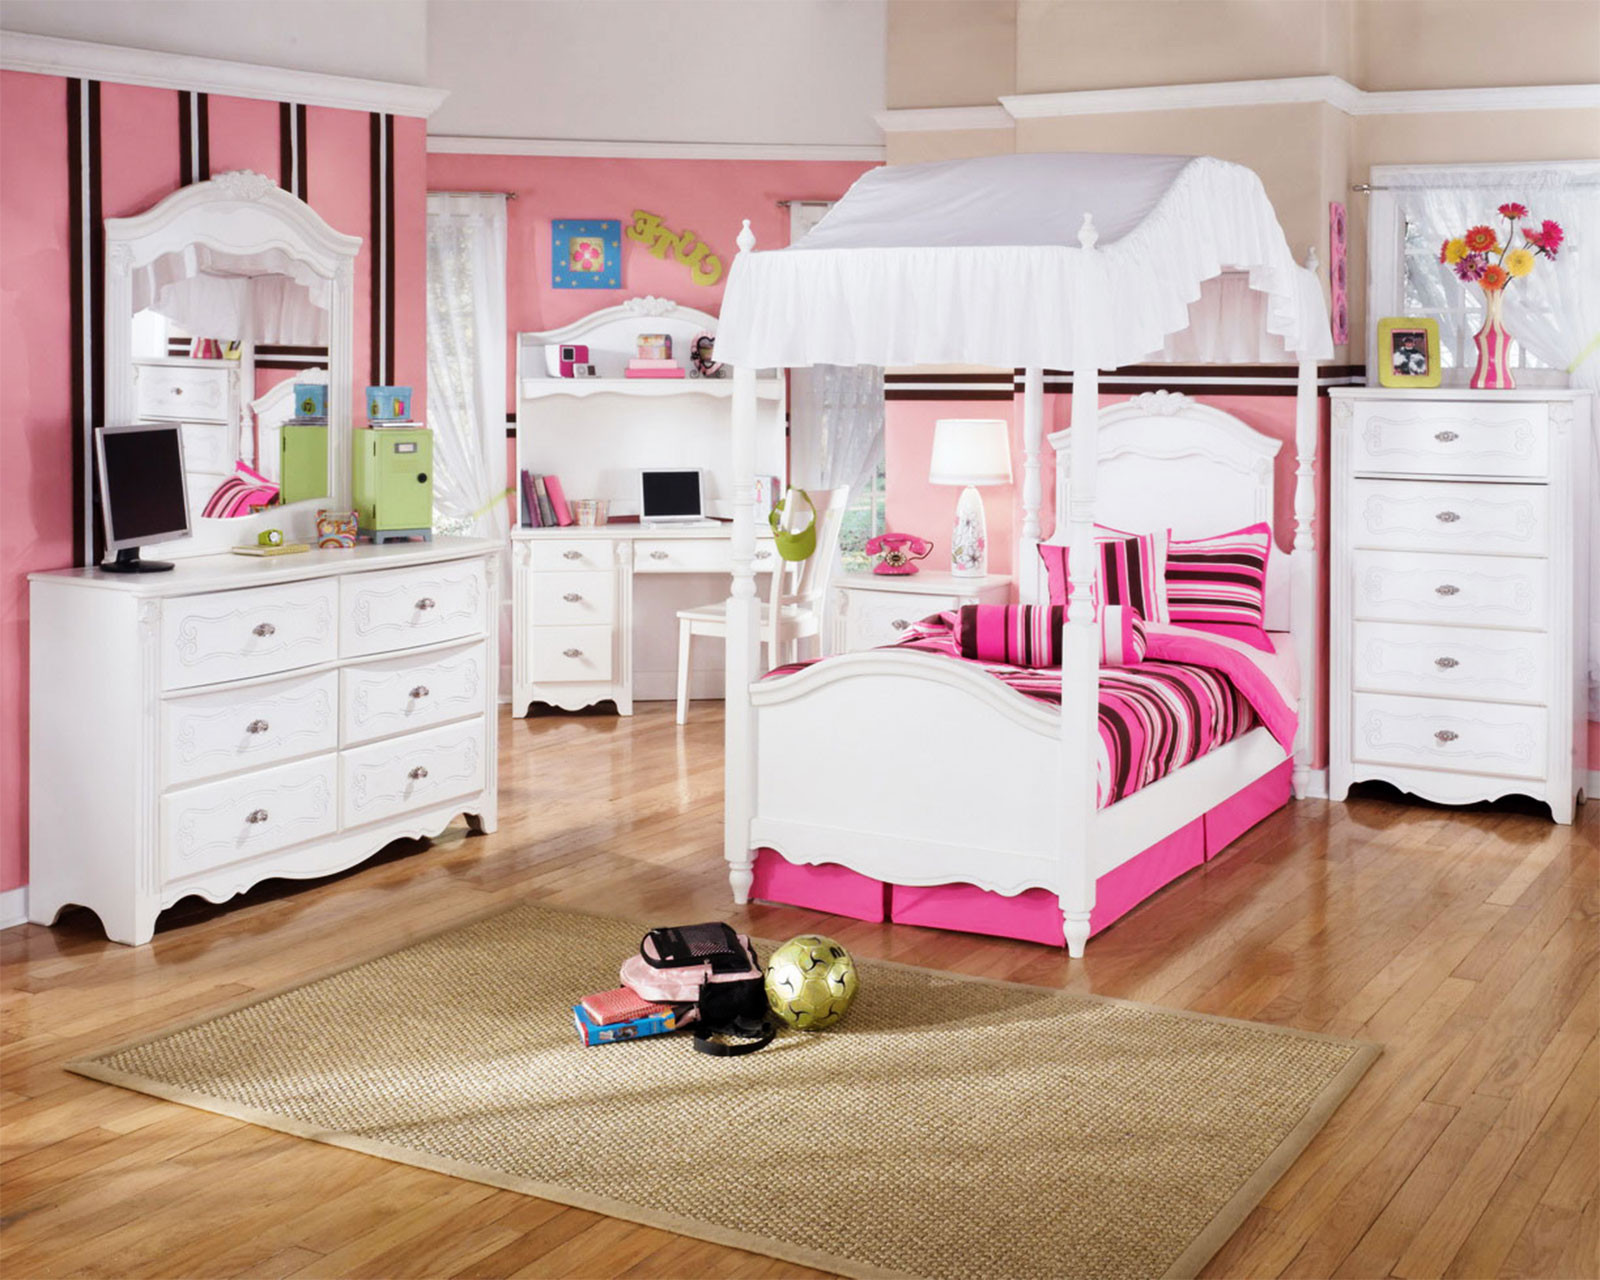 Bedroom Sets For Girls
 kids bedroom furniture girls Furniture Ideas